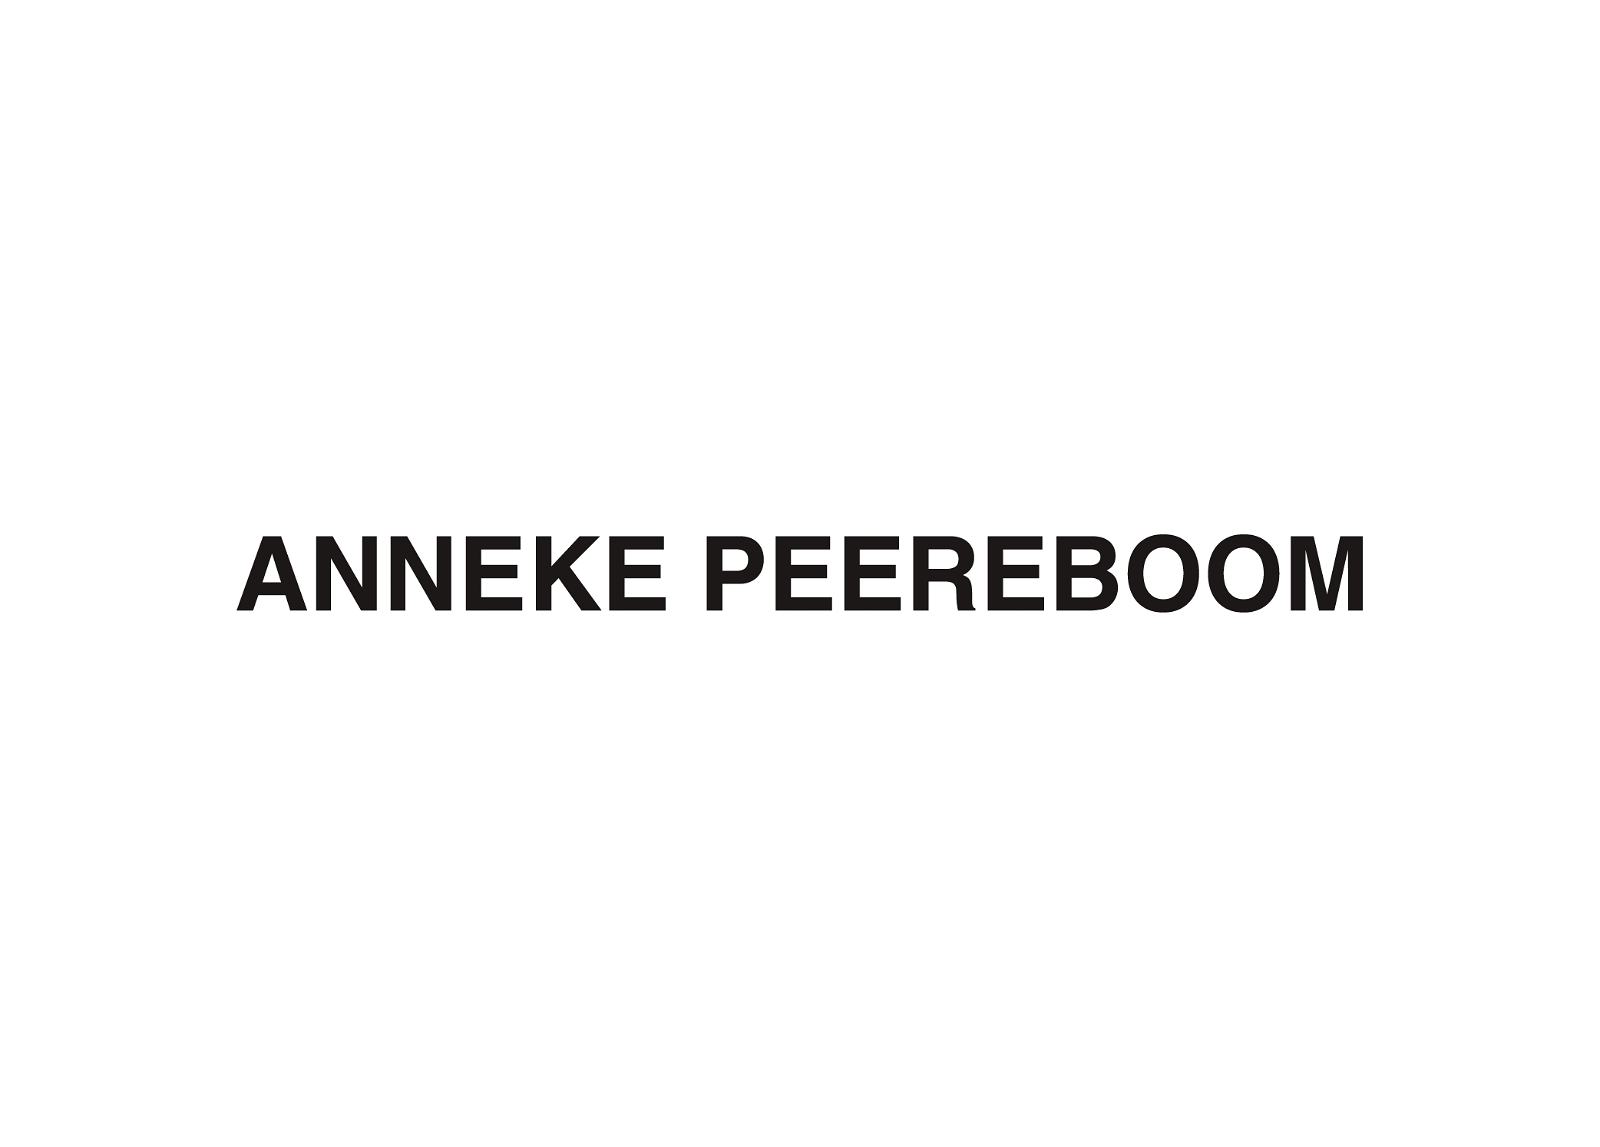 Anneke Peereboom